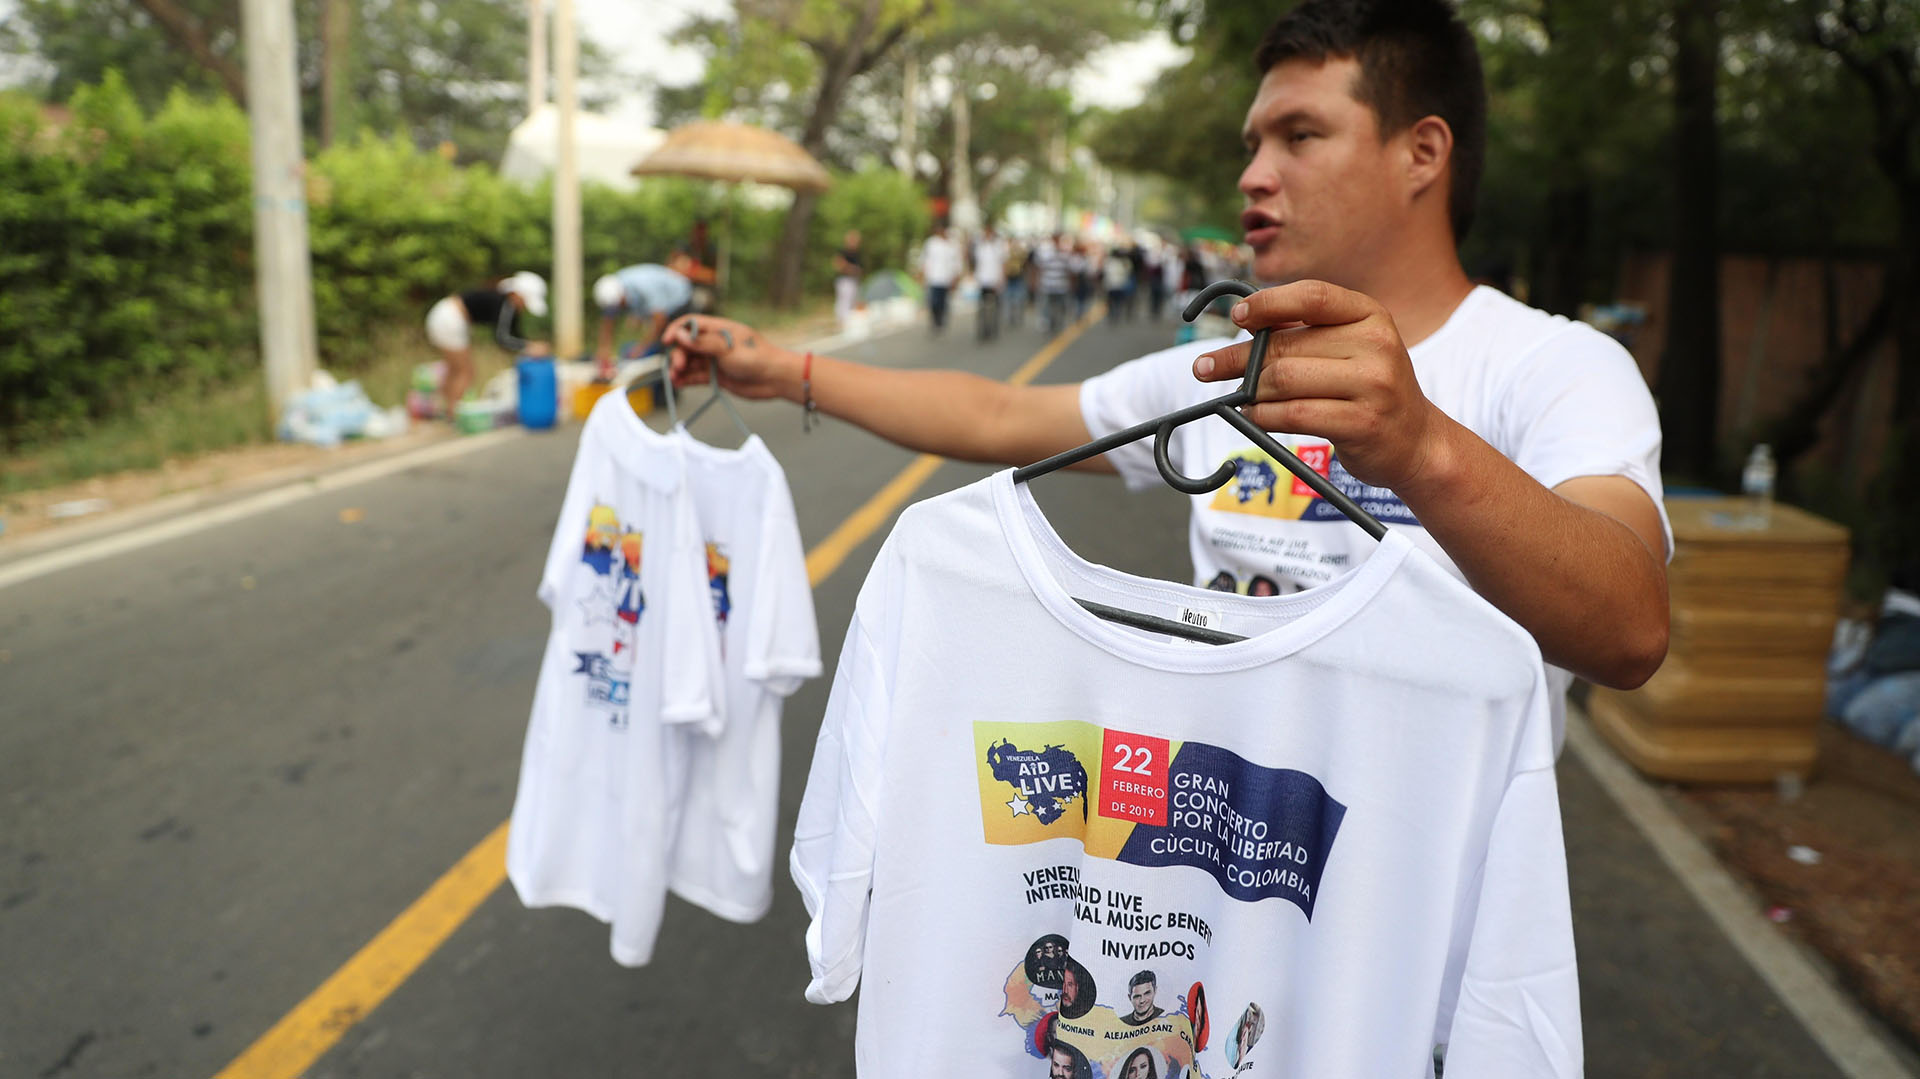 Un hombre vende camisetas previo al concierto Venezuela Aid Live este viernes, en Cúcuta (Colombia) (EFE/ Ernesto Guzmán)